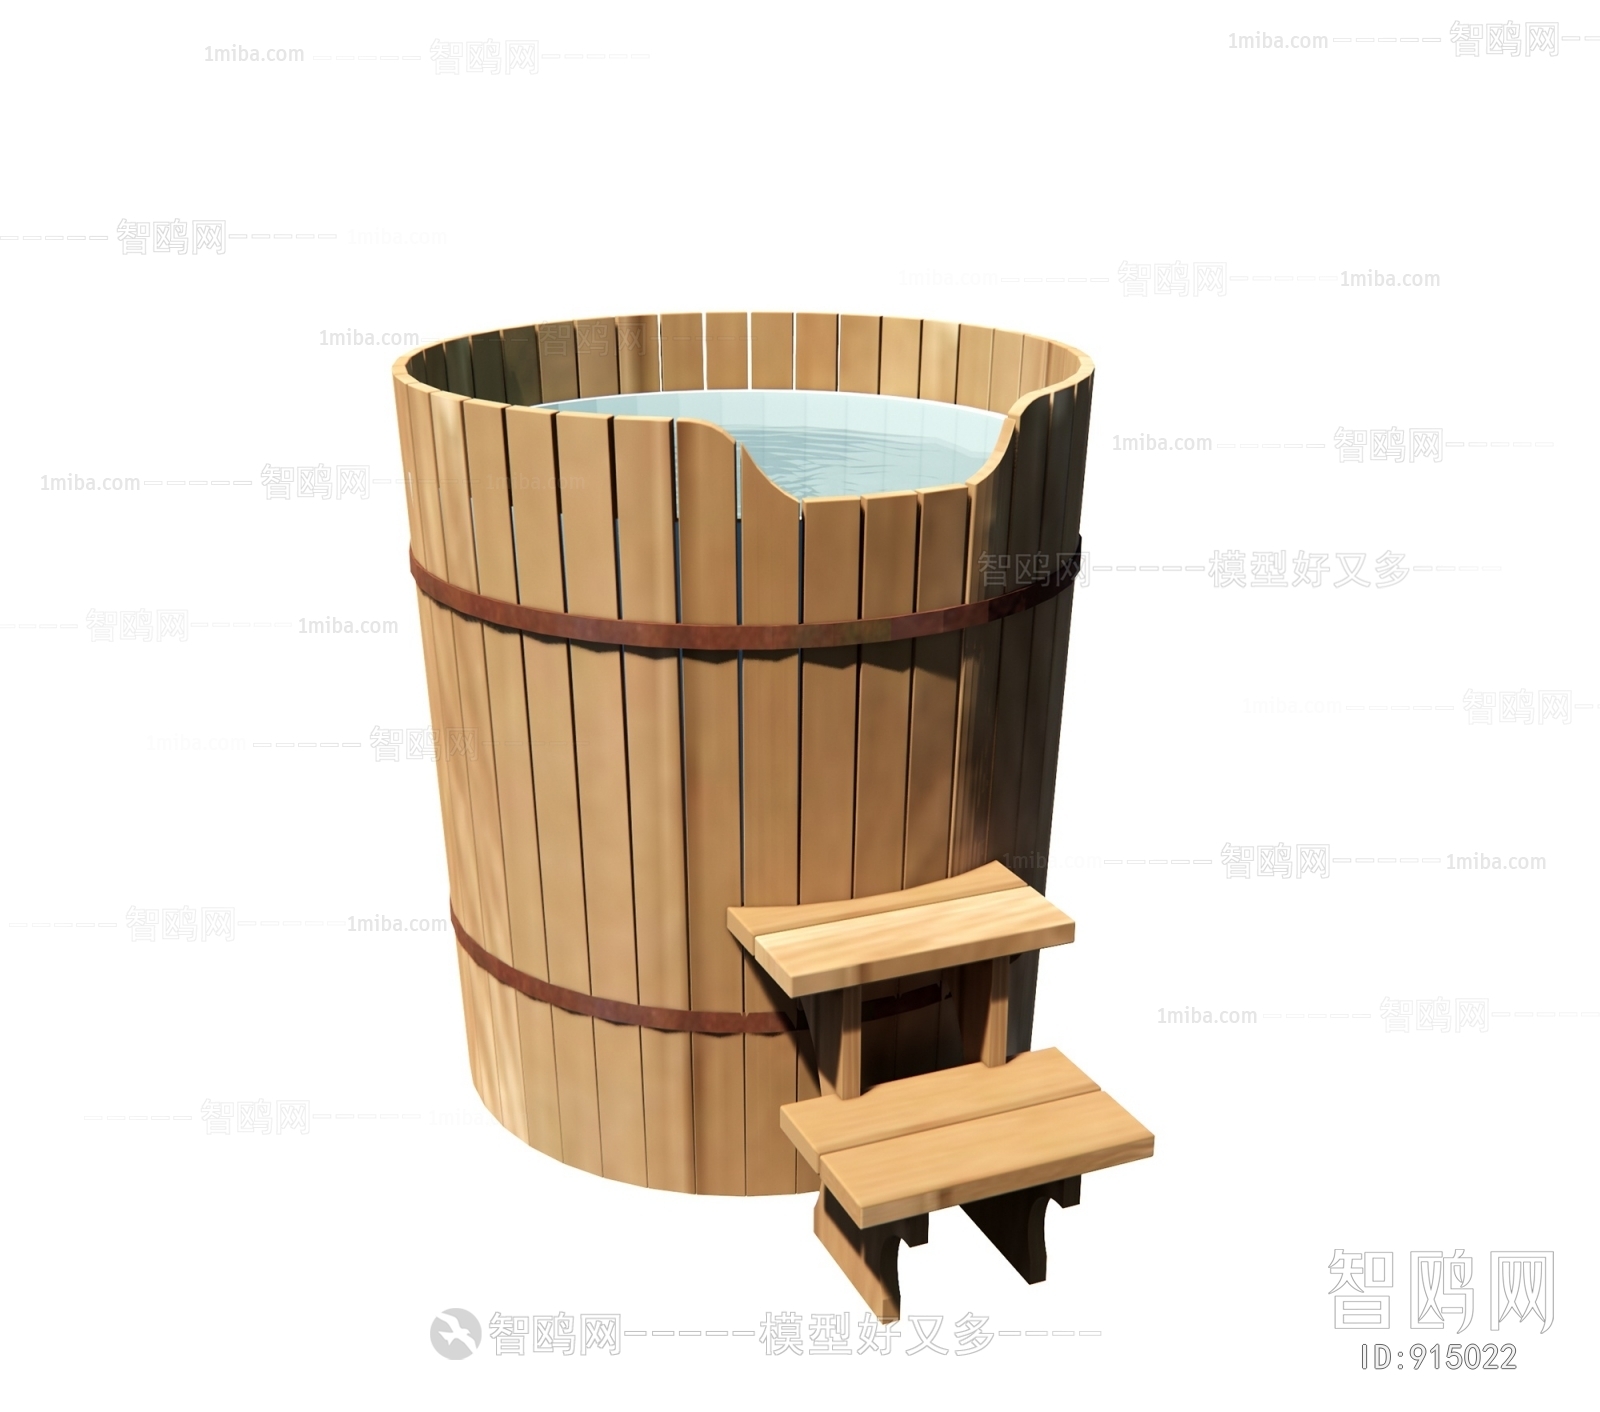 Chinese Style Bathtub